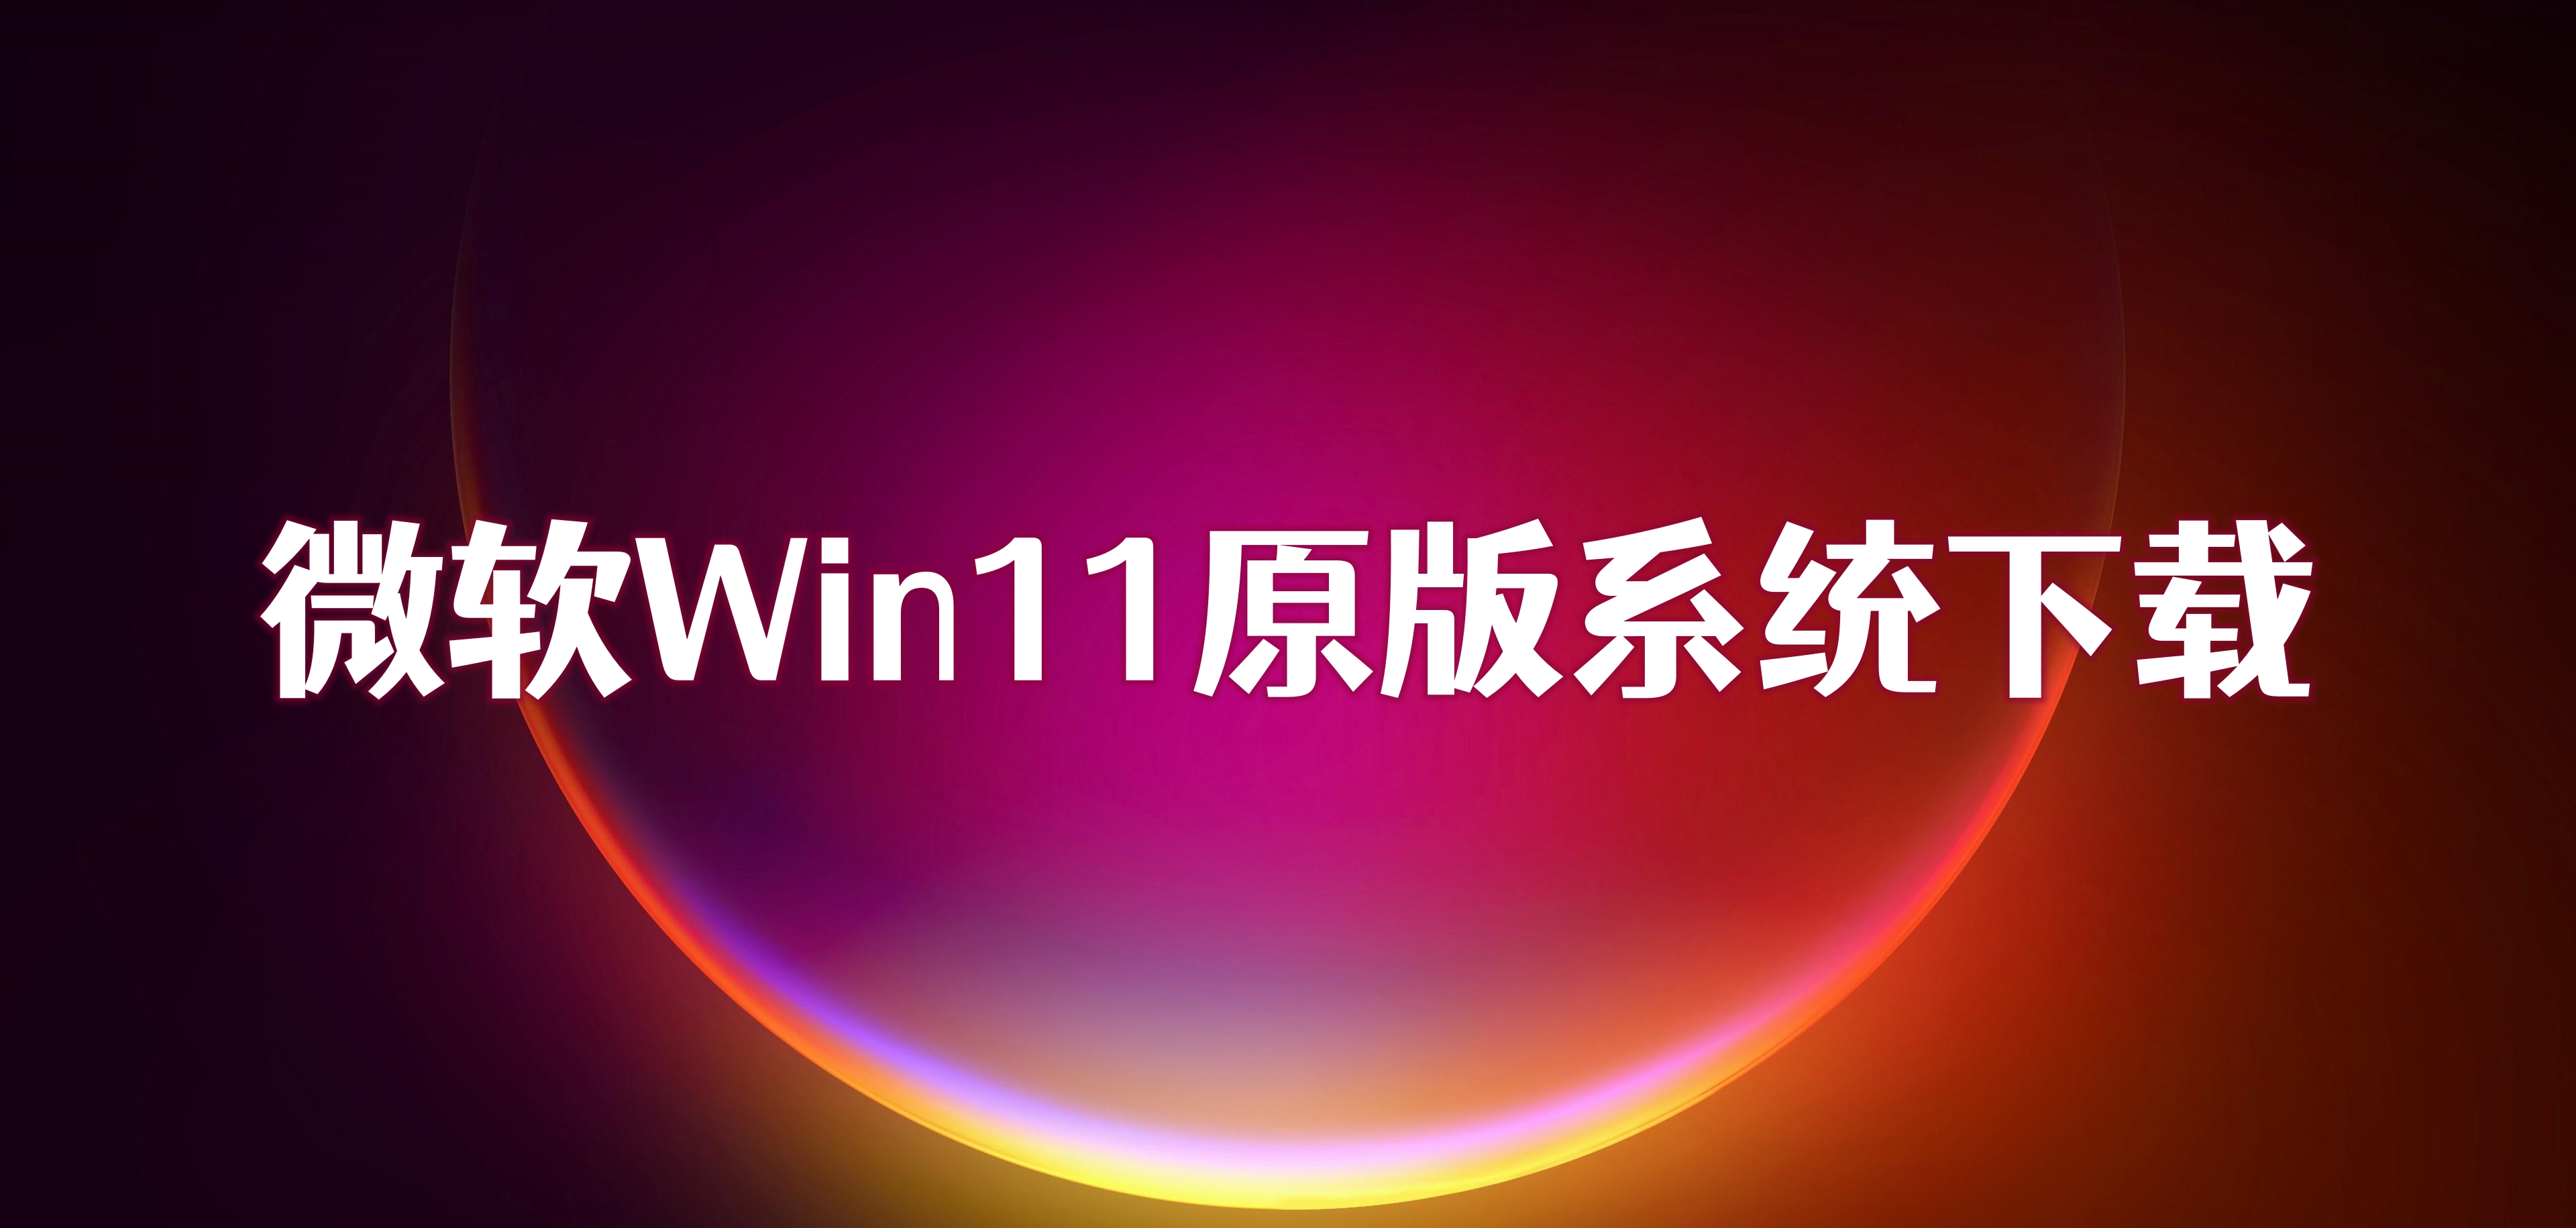 微软Win11原版系统下载